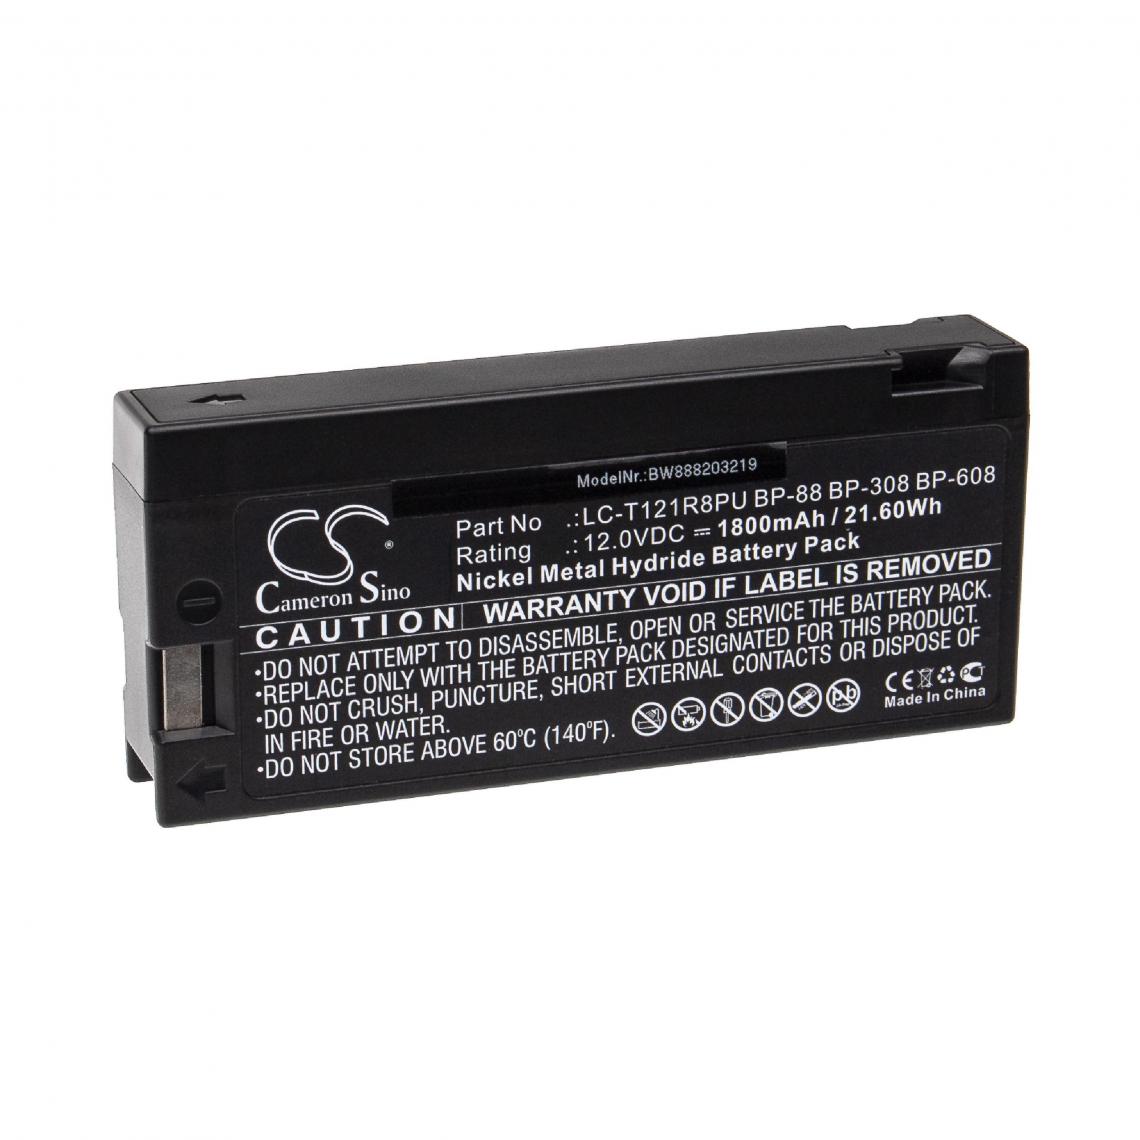 Vhbw - vhbw Batterie compatible avec Spacelabs PC Scout Transport Monitor 90309, SL1030 Monitor appareil médical (1800mAh, 12V, NiMH) - Piles spécifiques